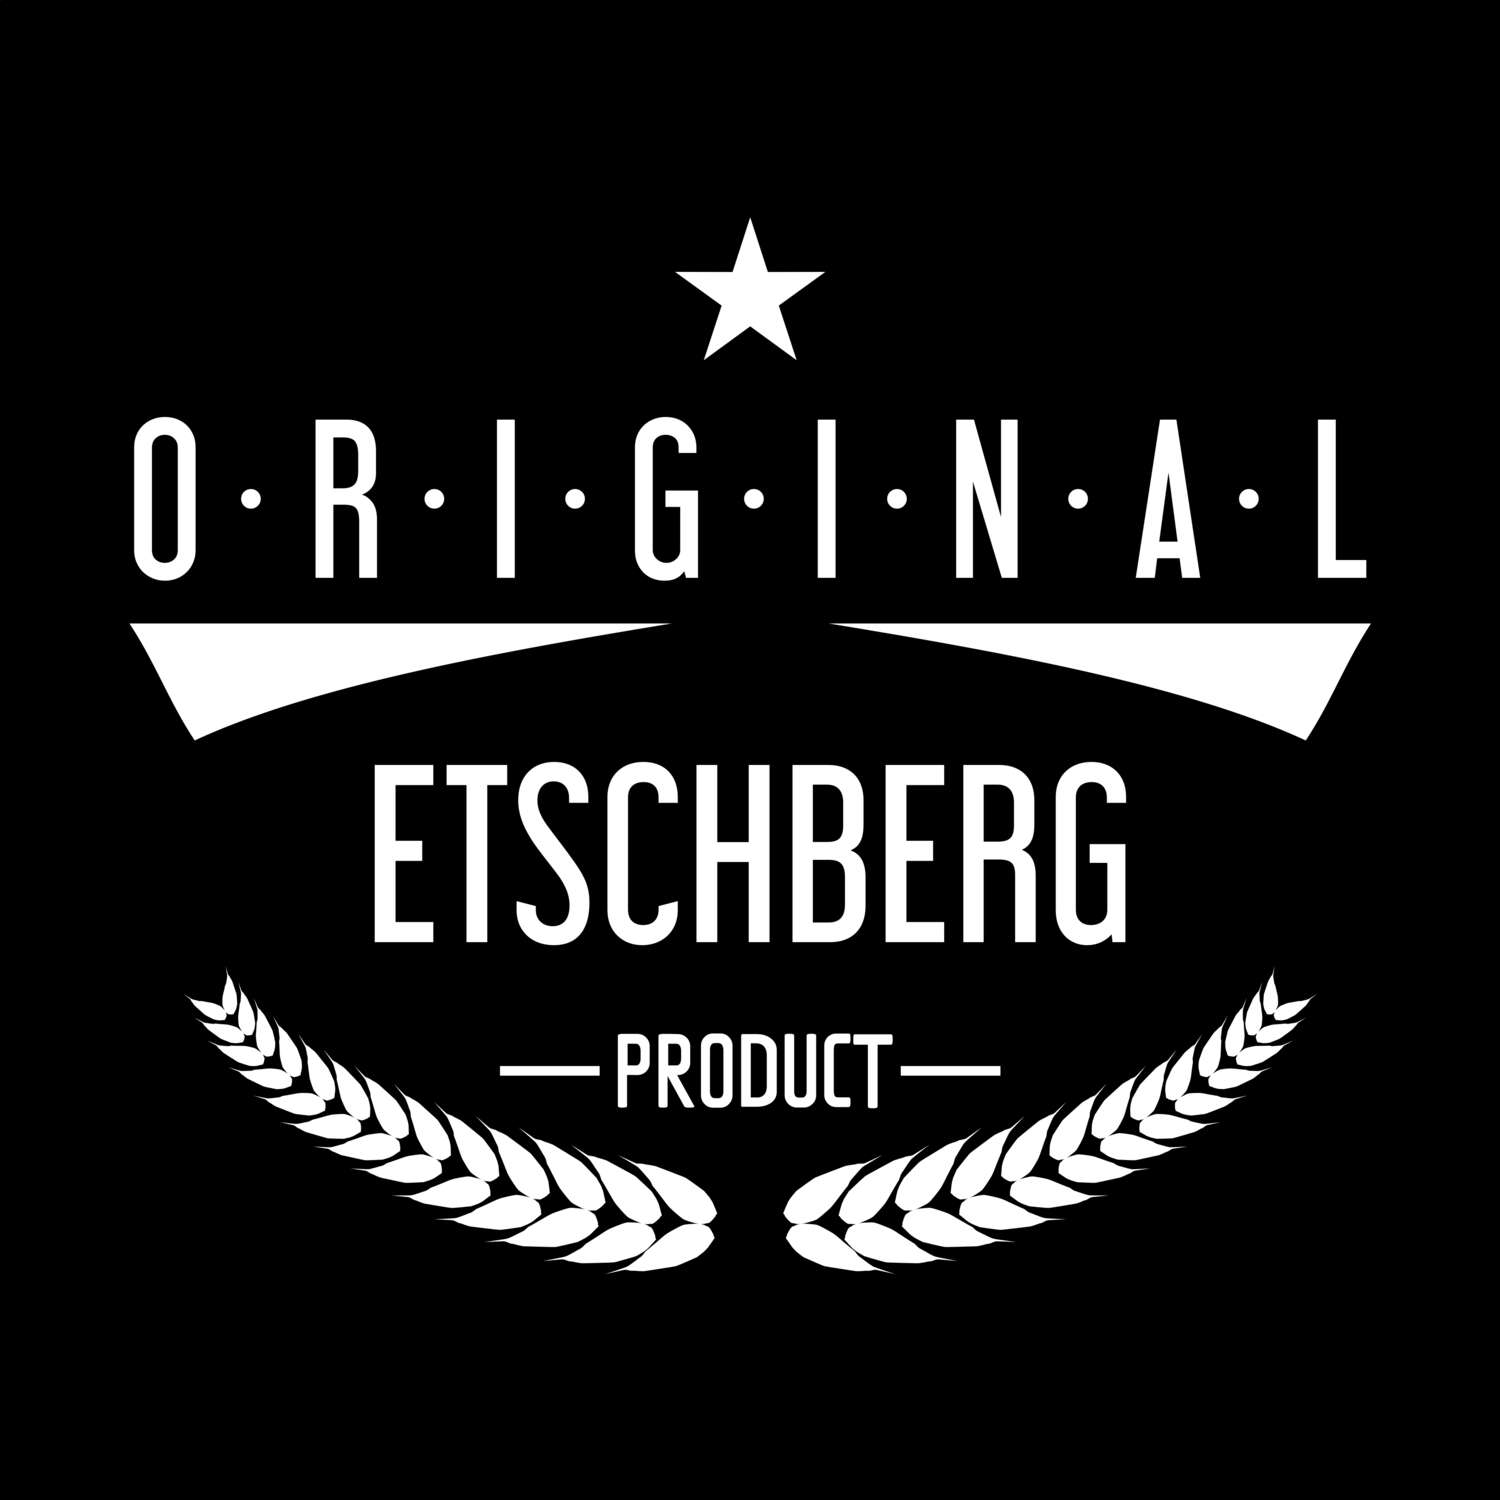 Etschberg T-Shirt »Original Product«